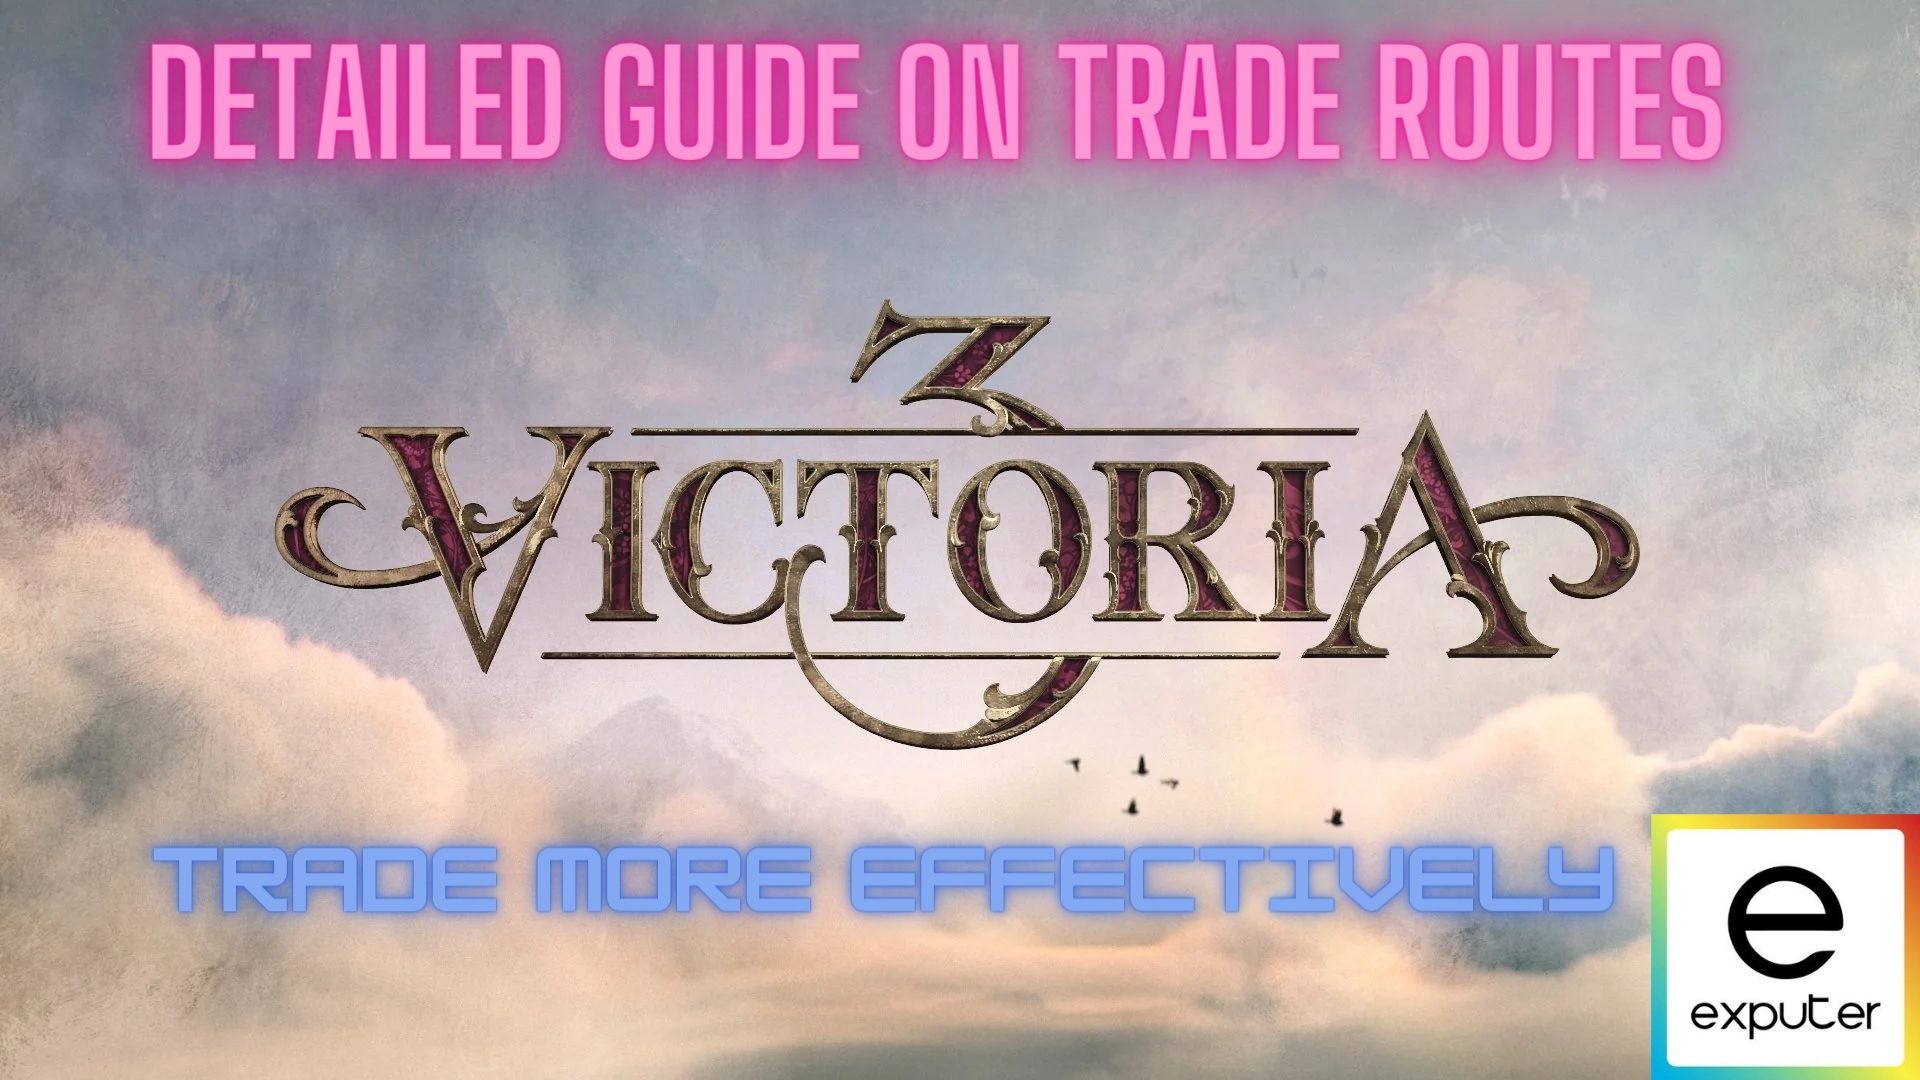 Trade Routes in Victoria 3